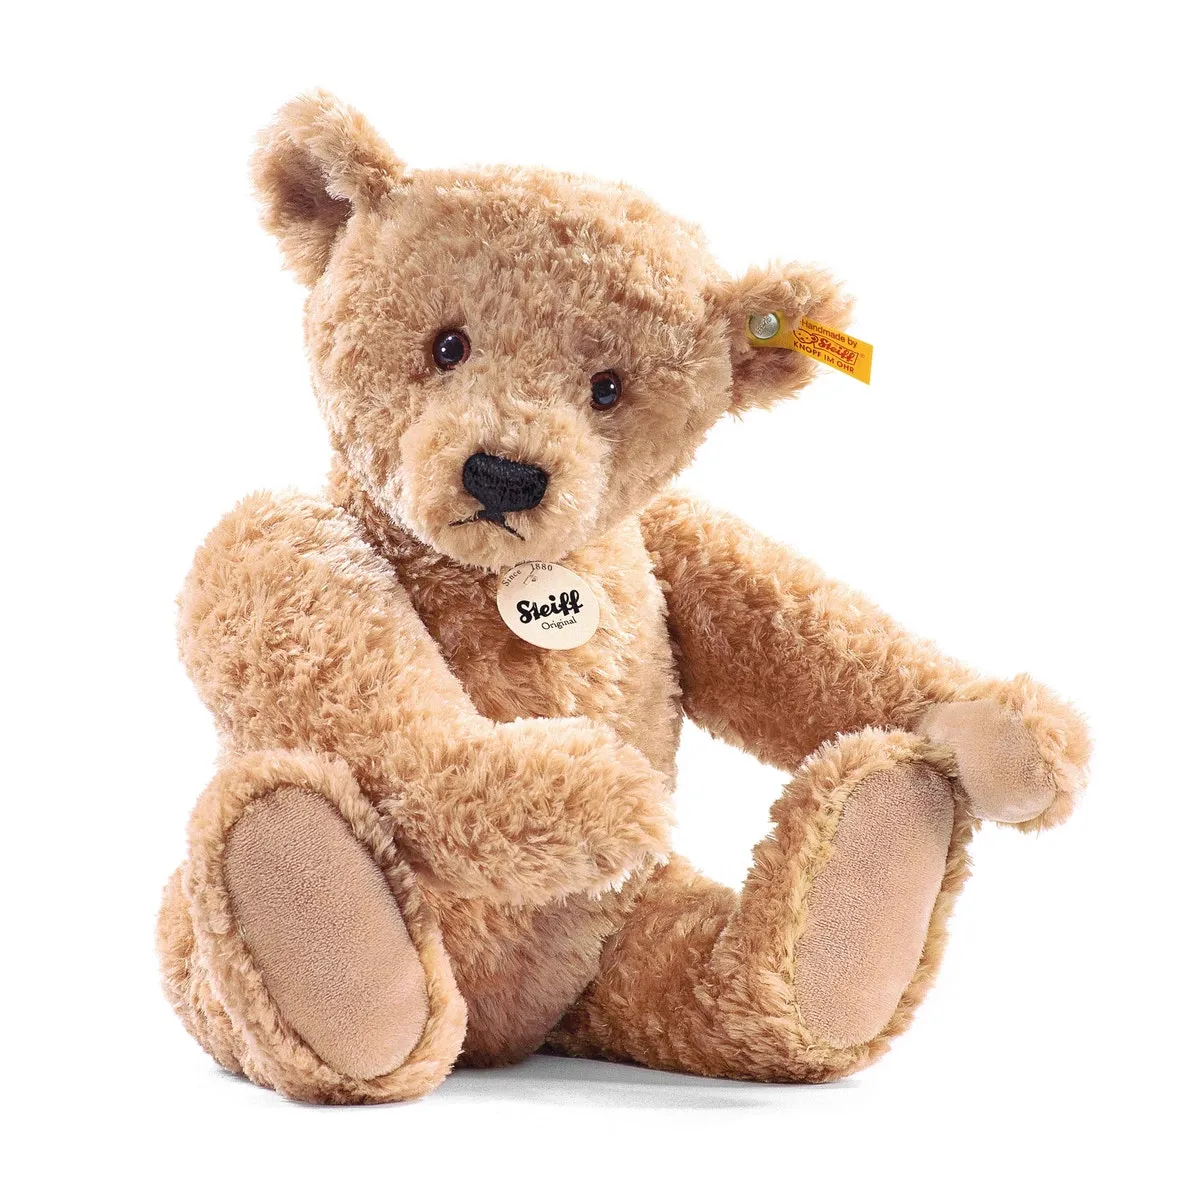 Stuffed teddy bear